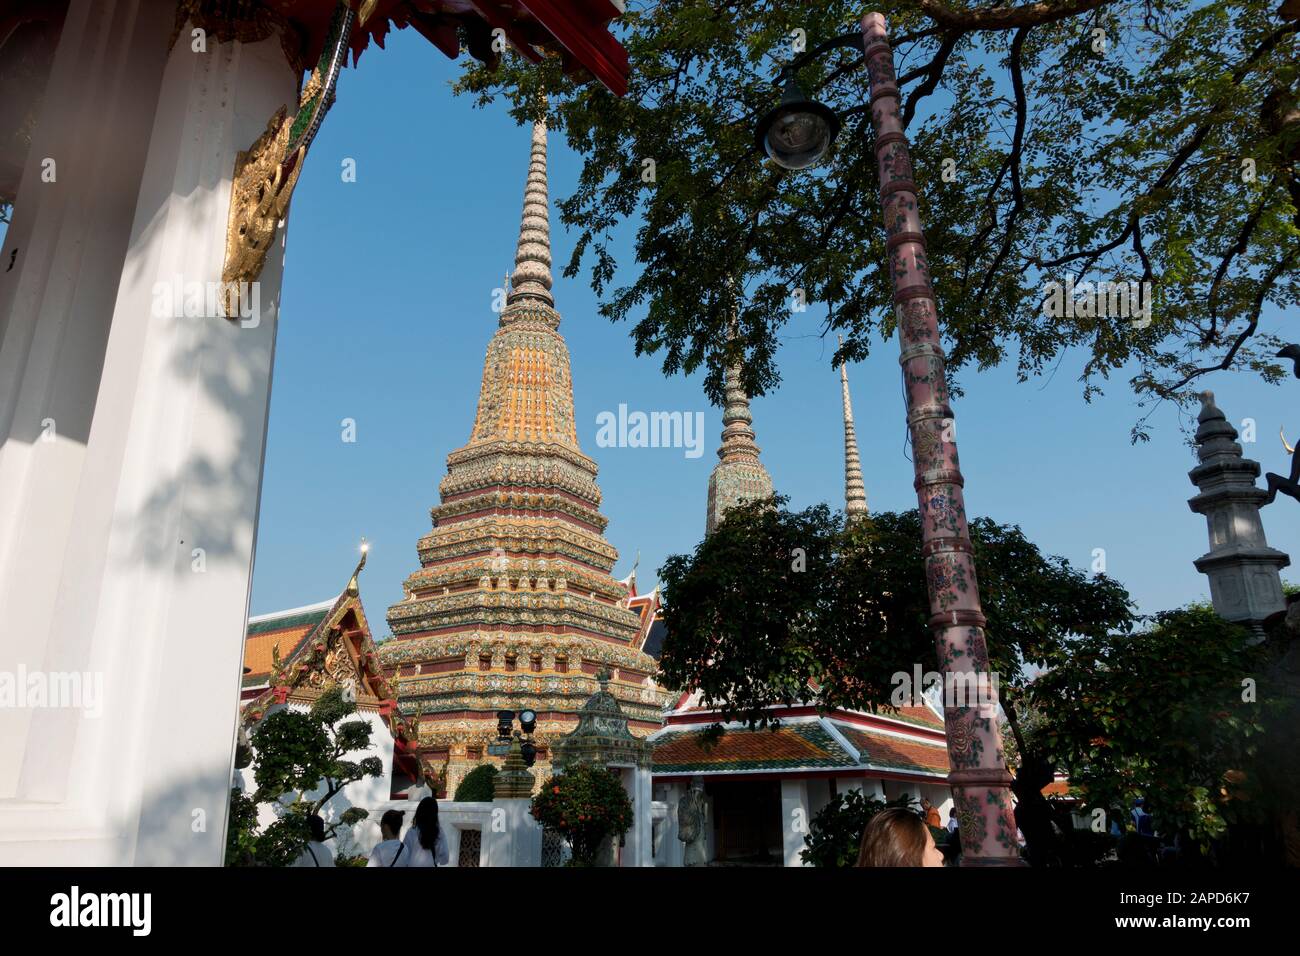 Wat Po ist eine buddhistische Tempelanlage. Sein Name bezieht sich auf den Bodhi-Baum, von dem angenommen wird, dass Buddha Erleuchtung erlangt hat. Stockfoto